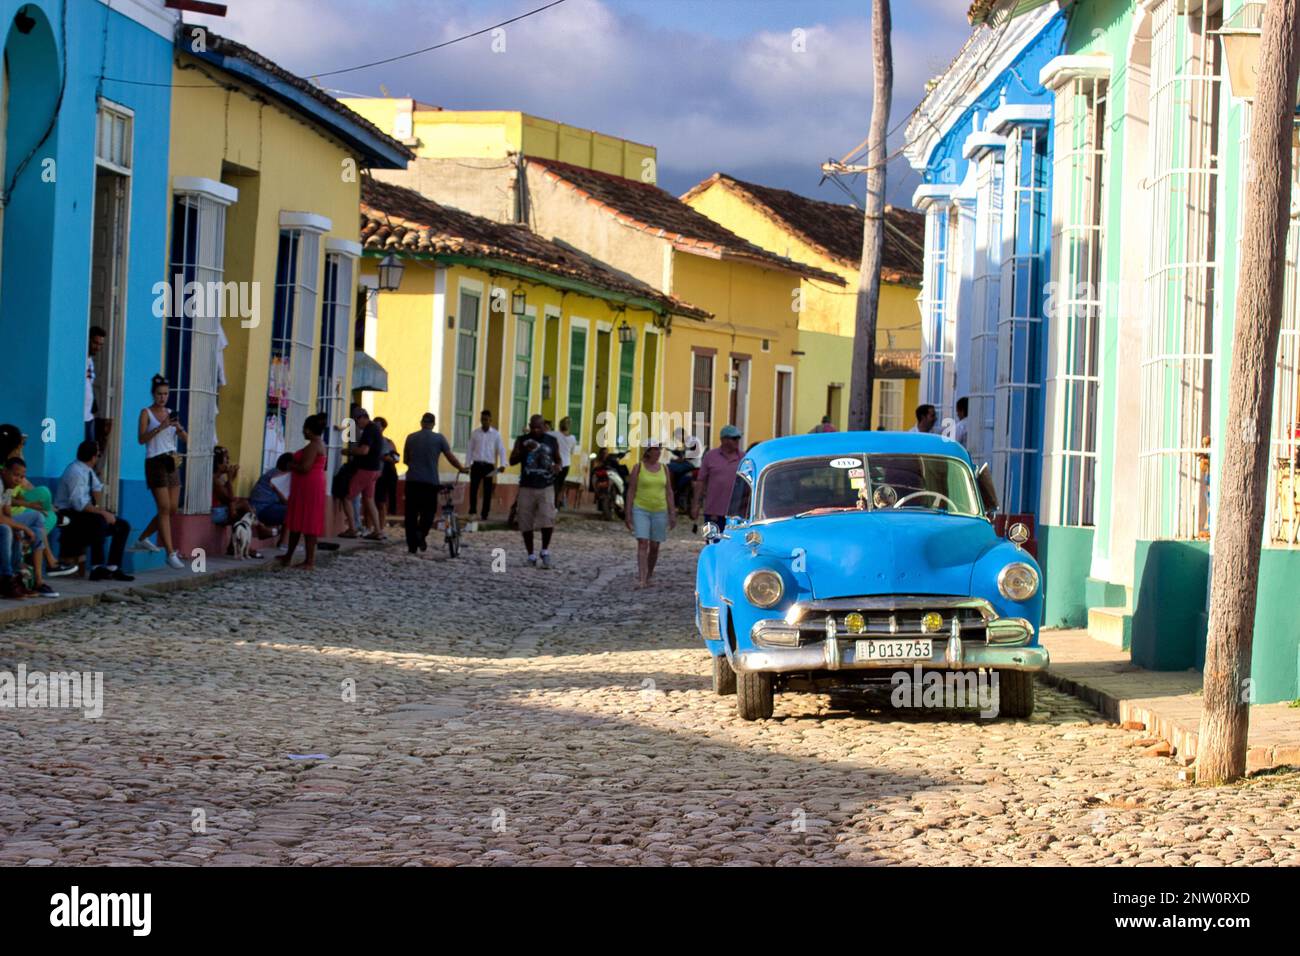 Ein blauer Oldtimer in einer Gasse mit alten, bunten Gebäuden in Trinidad, Kuba, Menschen im Hintergrund. Stockfoto